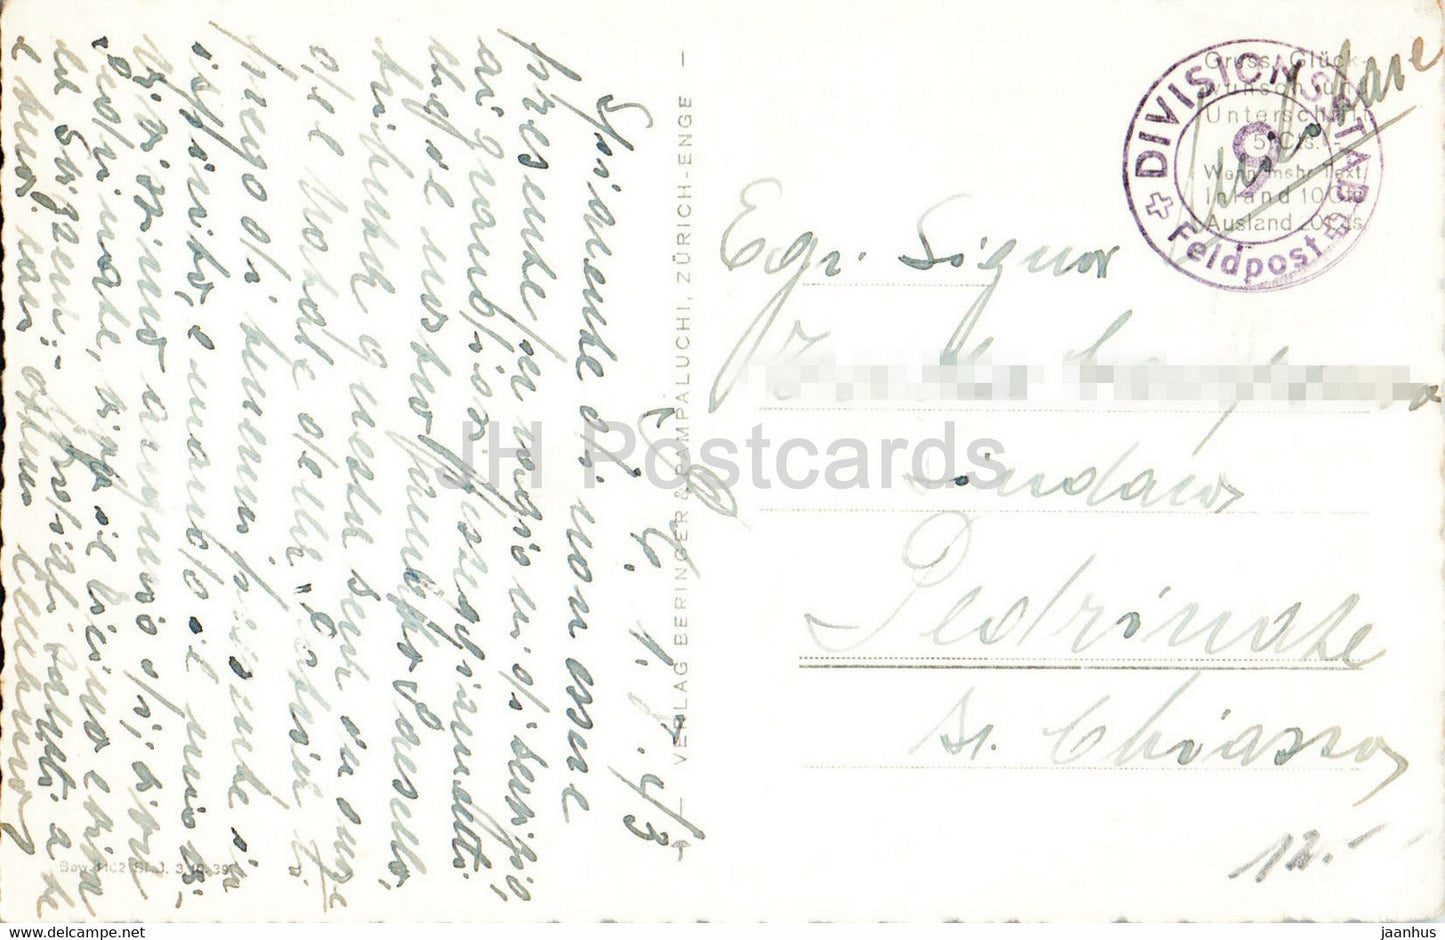 Andermatt gegen die Furka - Militärpost - Feldpost - 1036 - alte Postkarte - 1943 - Schweiz - gebraucht